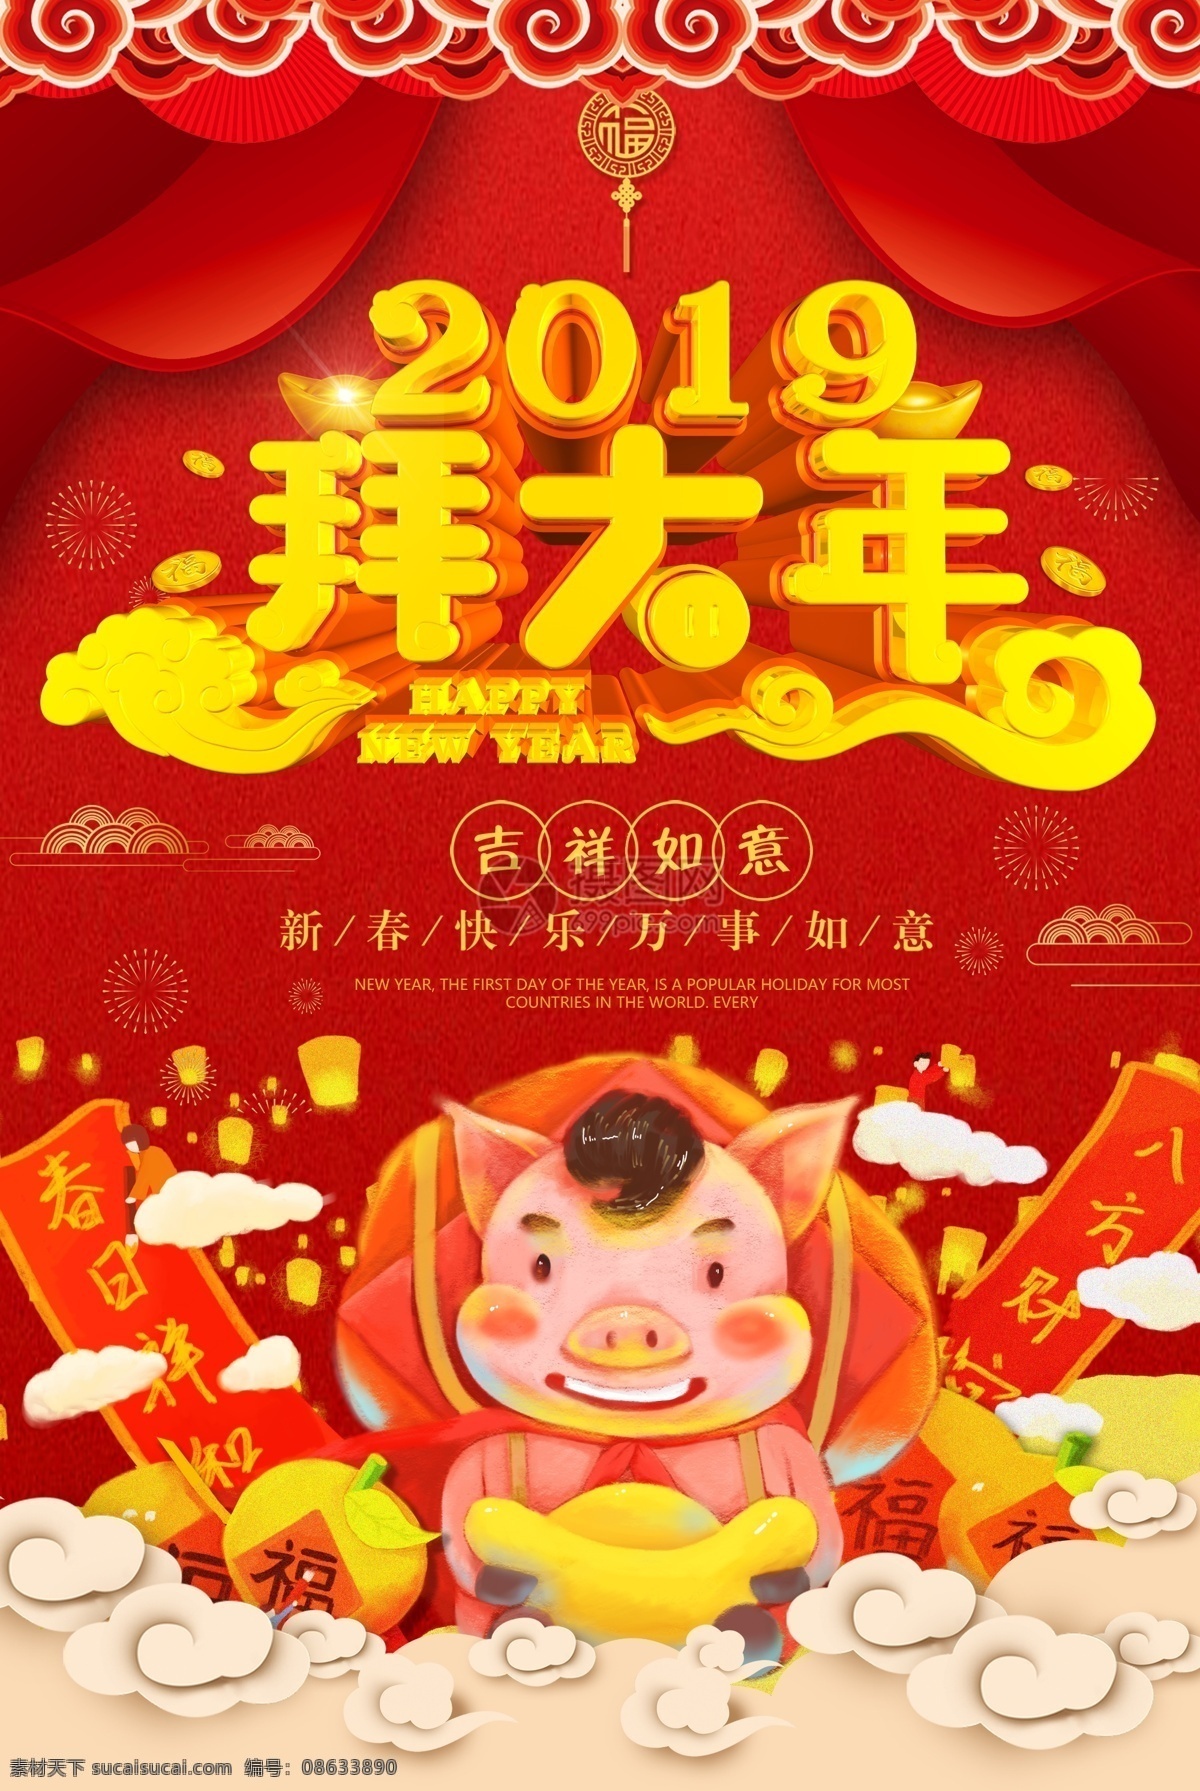 2019 拜 大年 猪年 新年 海报 拜年 拜大年 新春 春节 过年 红色 喜庆 财源广进 金猪 祥云